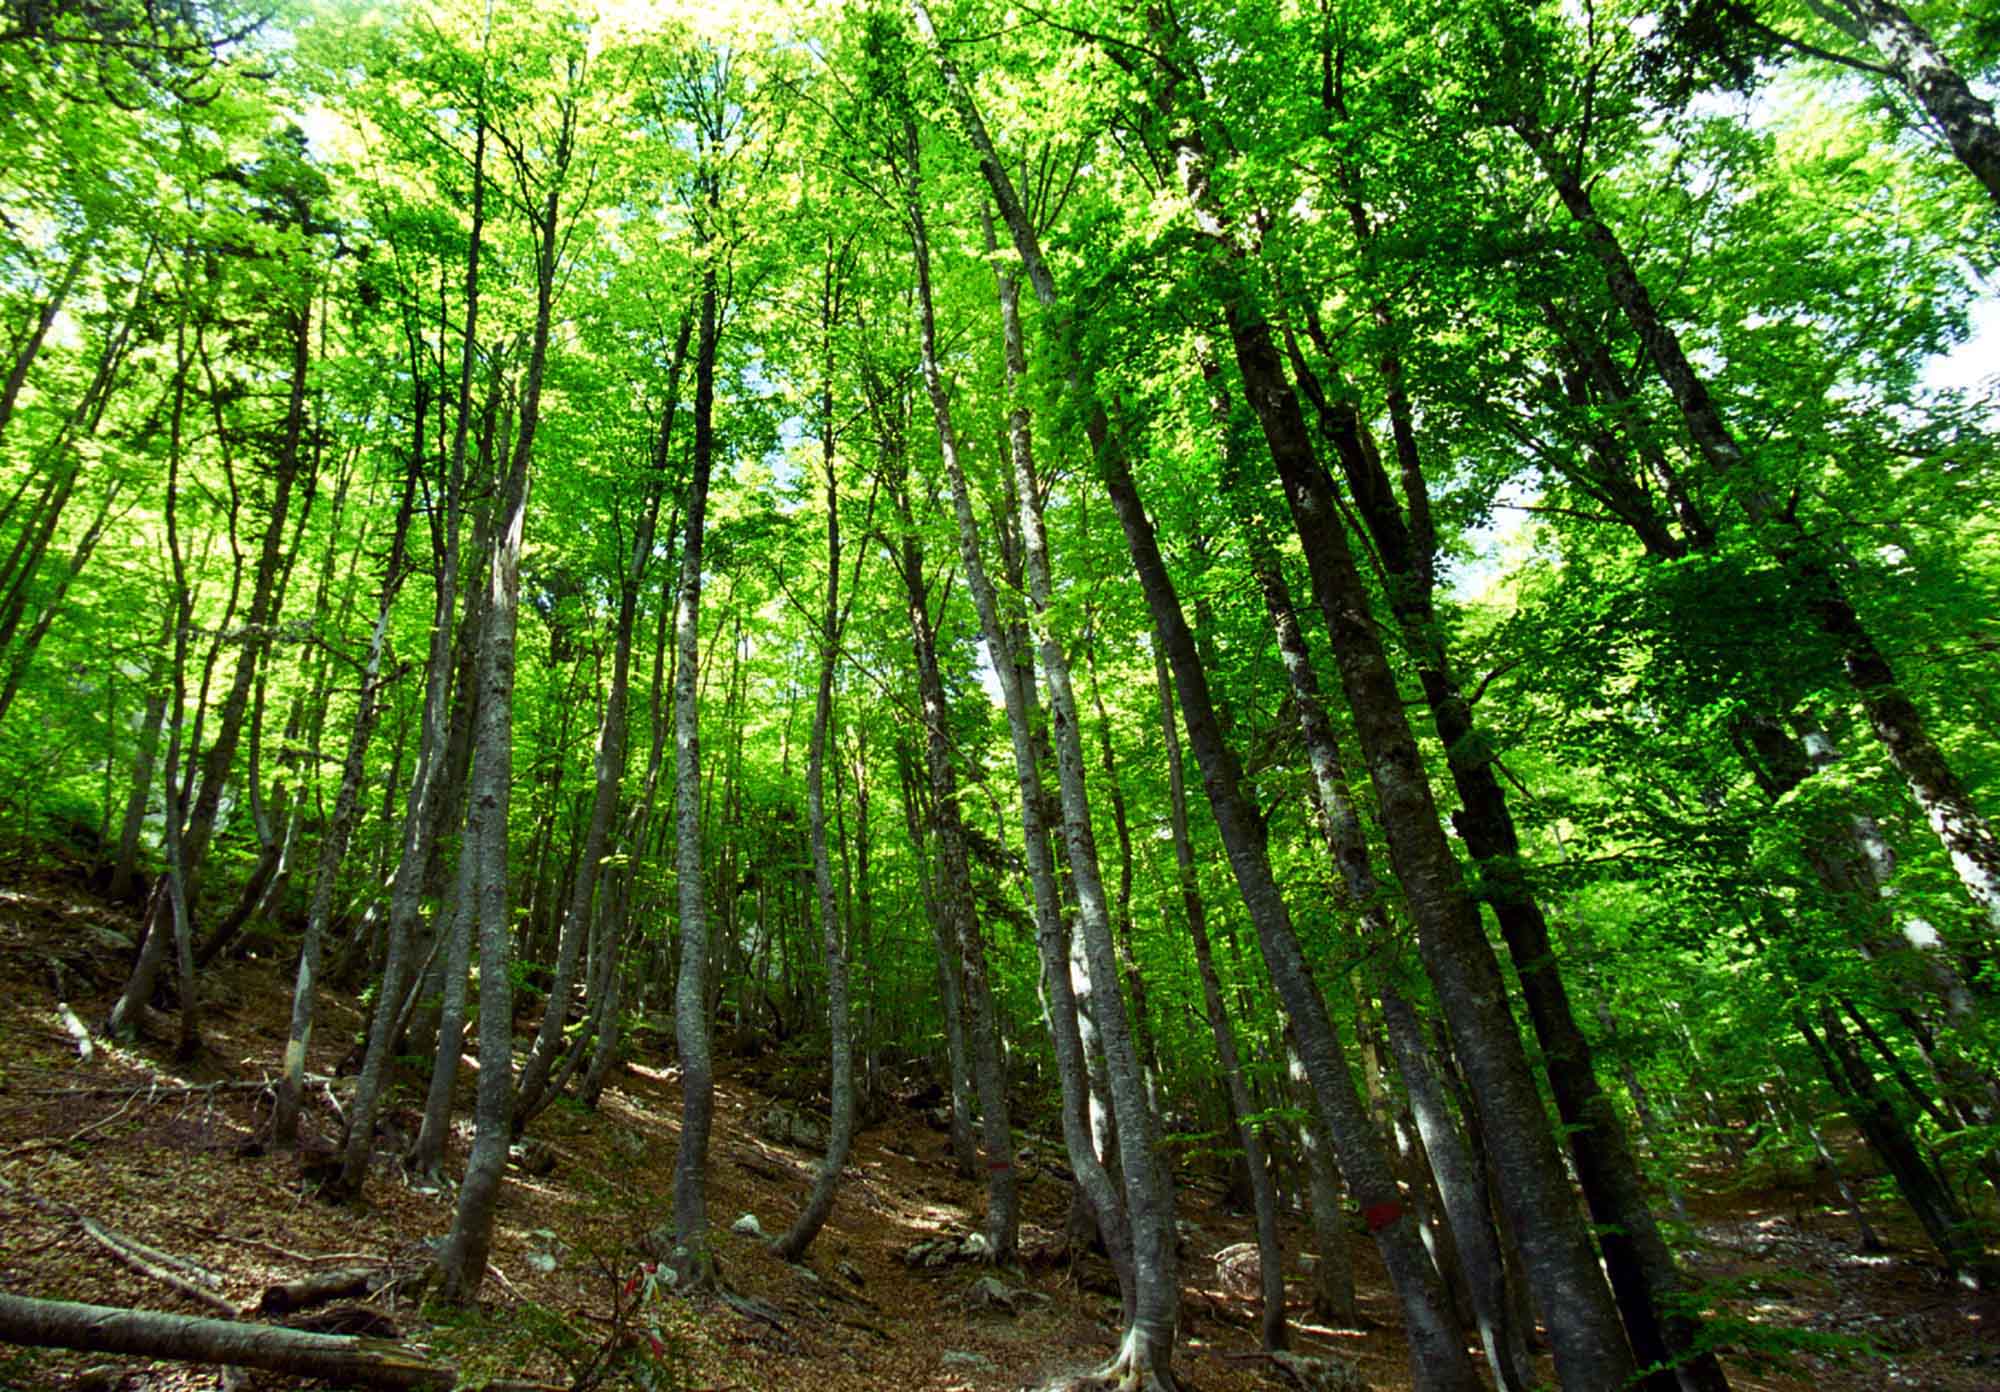 Ολο το νομοσχέδιο για δάση, οικοδομικούς συνεταιρισμούς και εγκαταλελειμμένους οικισμούς